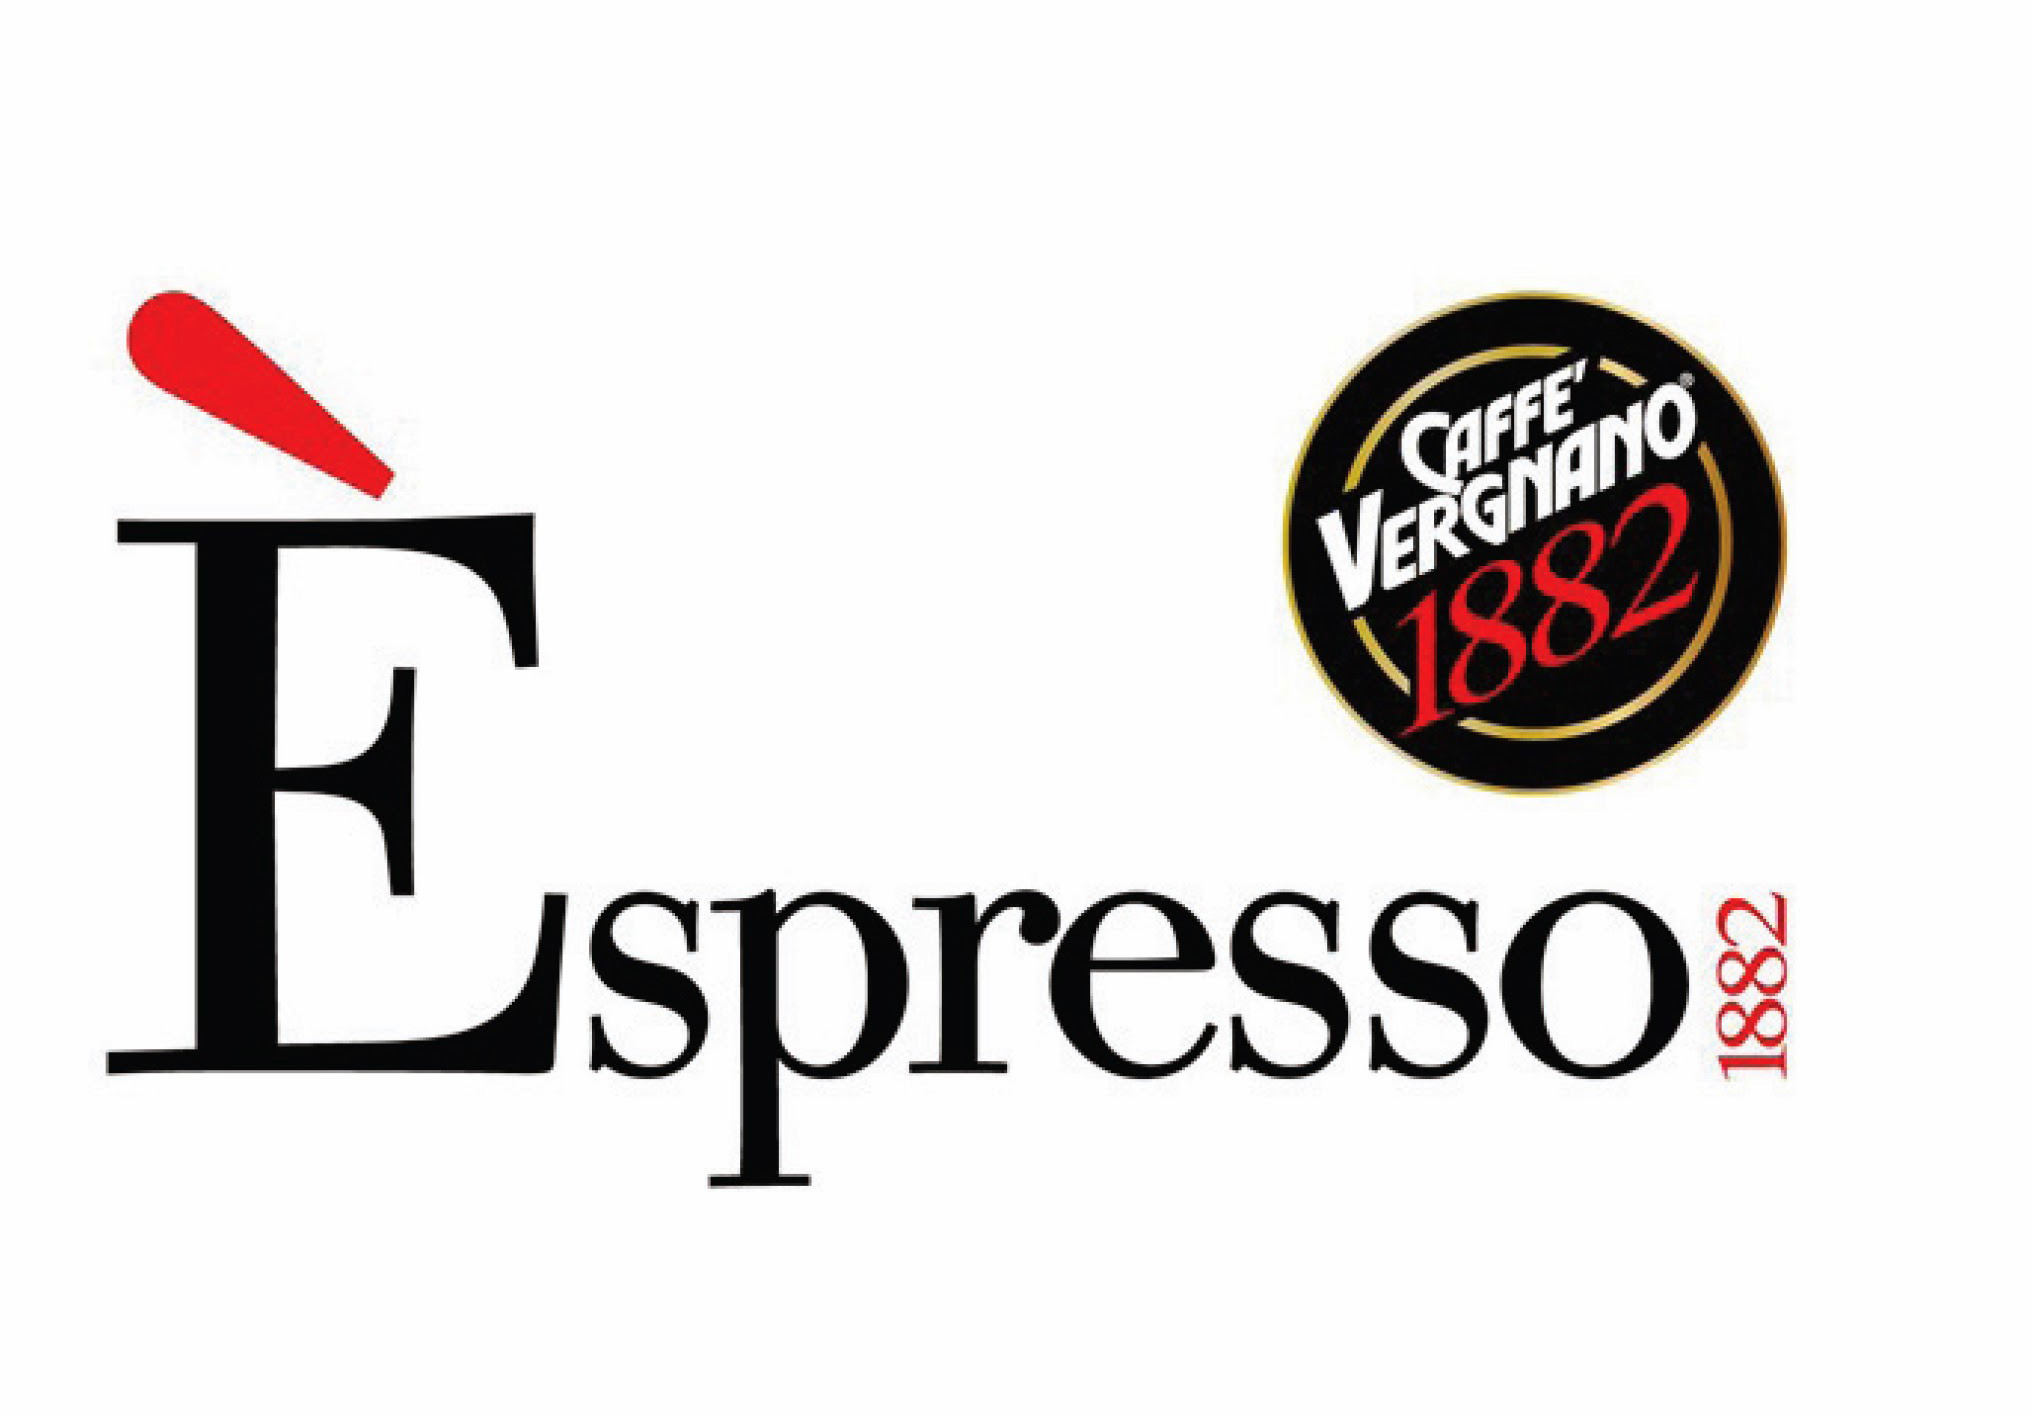 E’SPRESSO – CAFFE VERGNANO – BRANDING